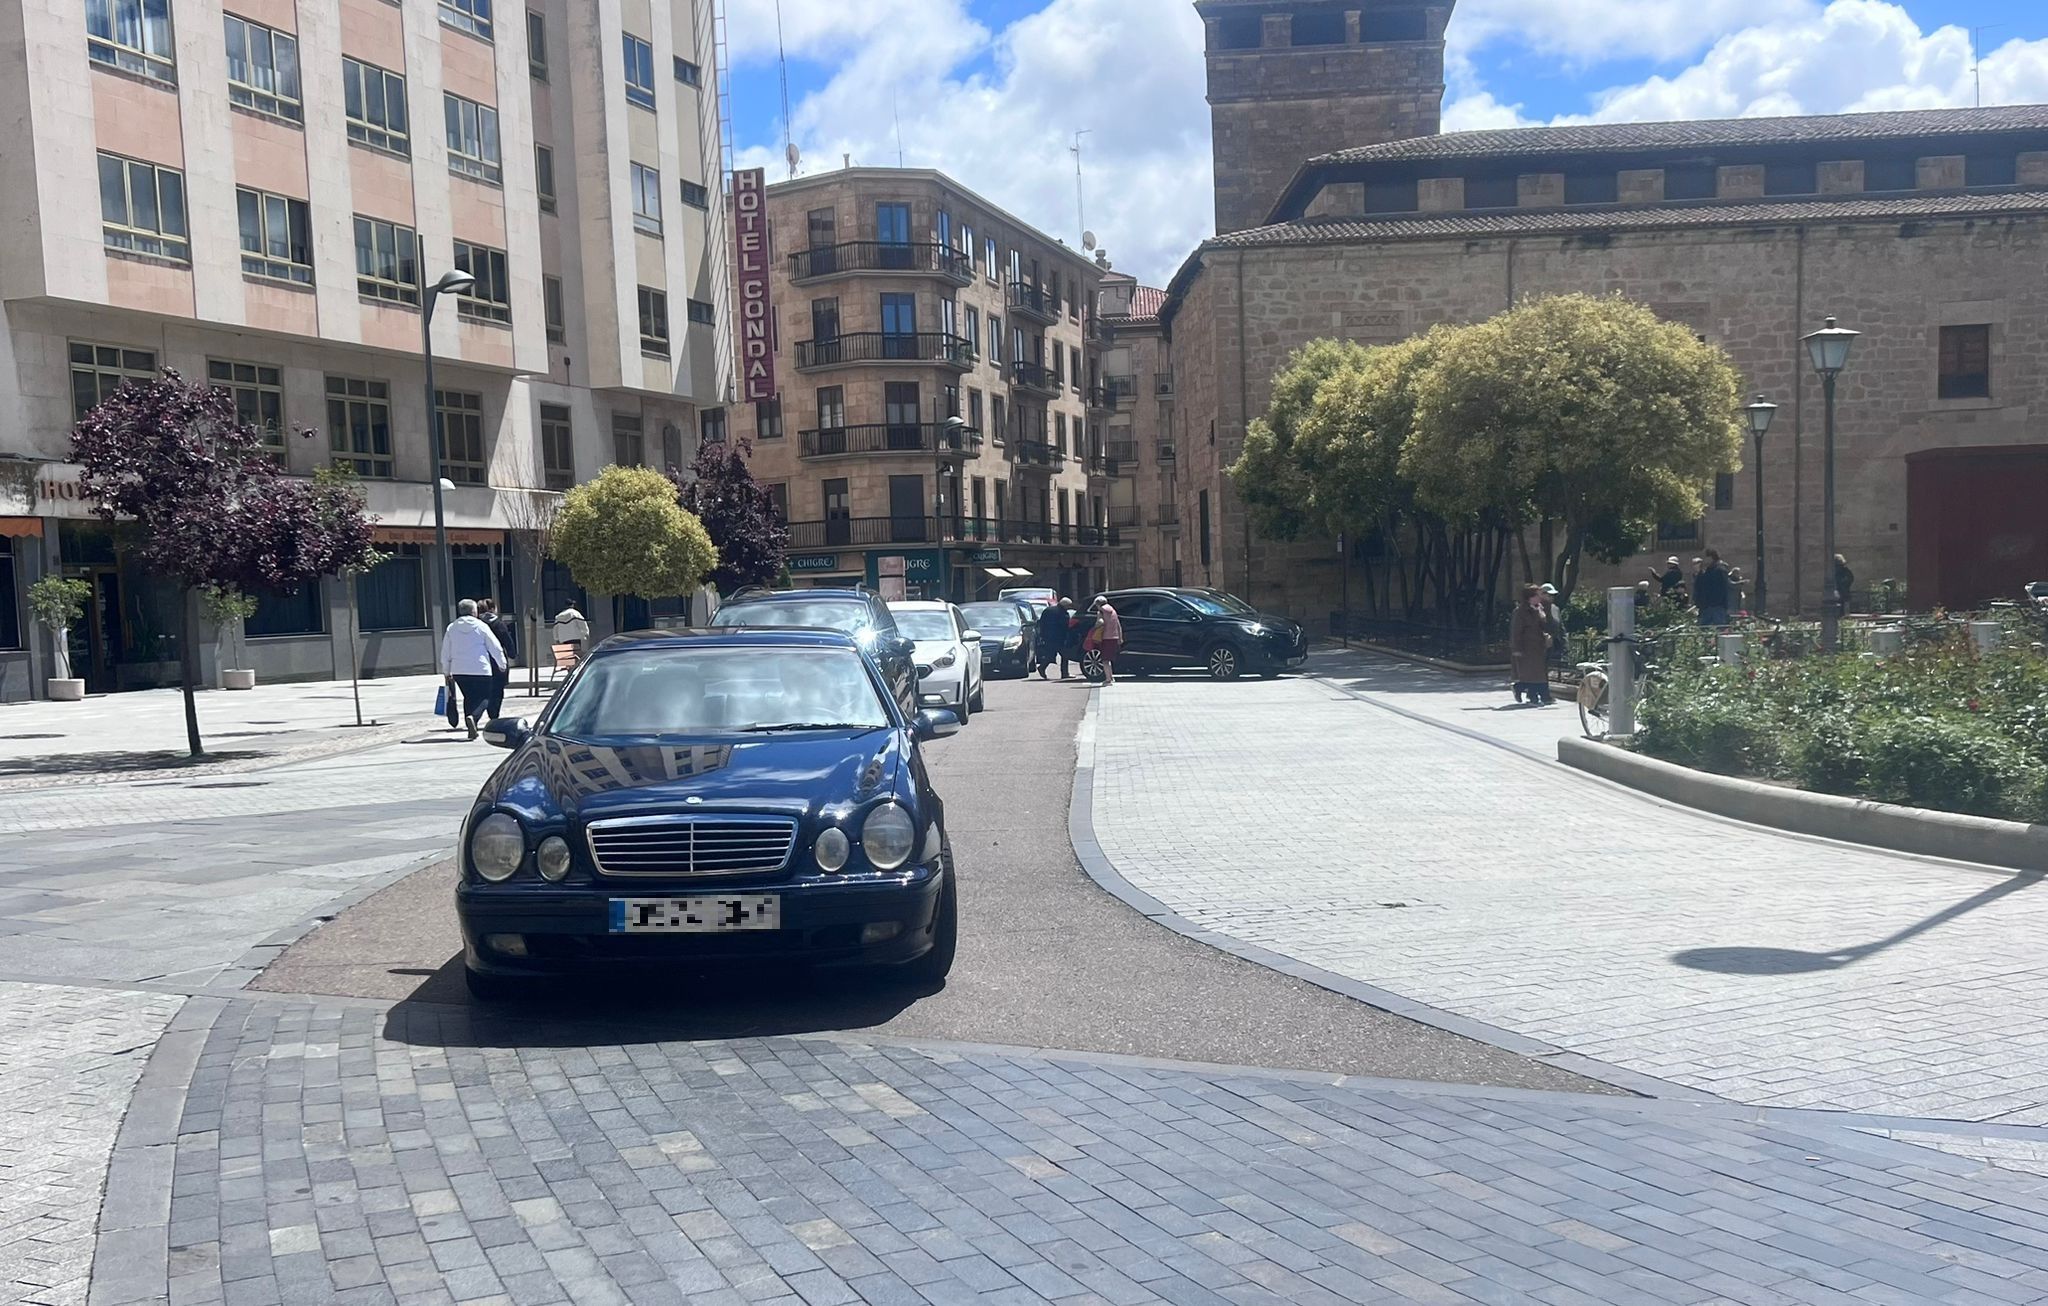 Largas colas en los aparcamientos de Salamanca capital por el puente del 1 de mayo. Fotos S24H 